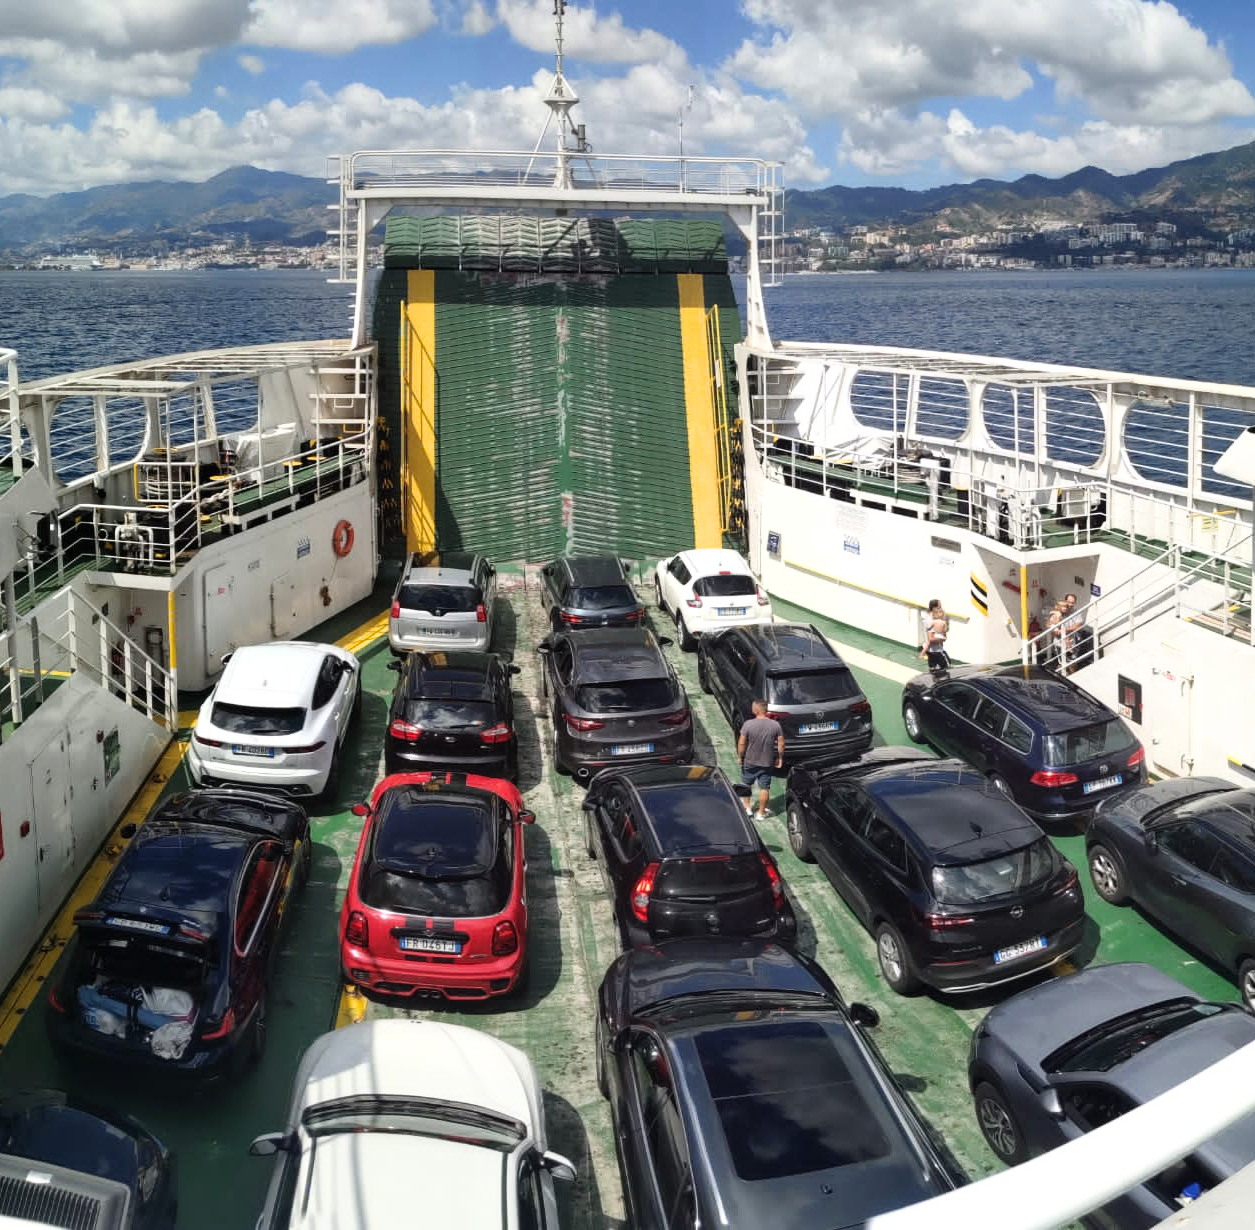 Vehicles on board a ferry en route